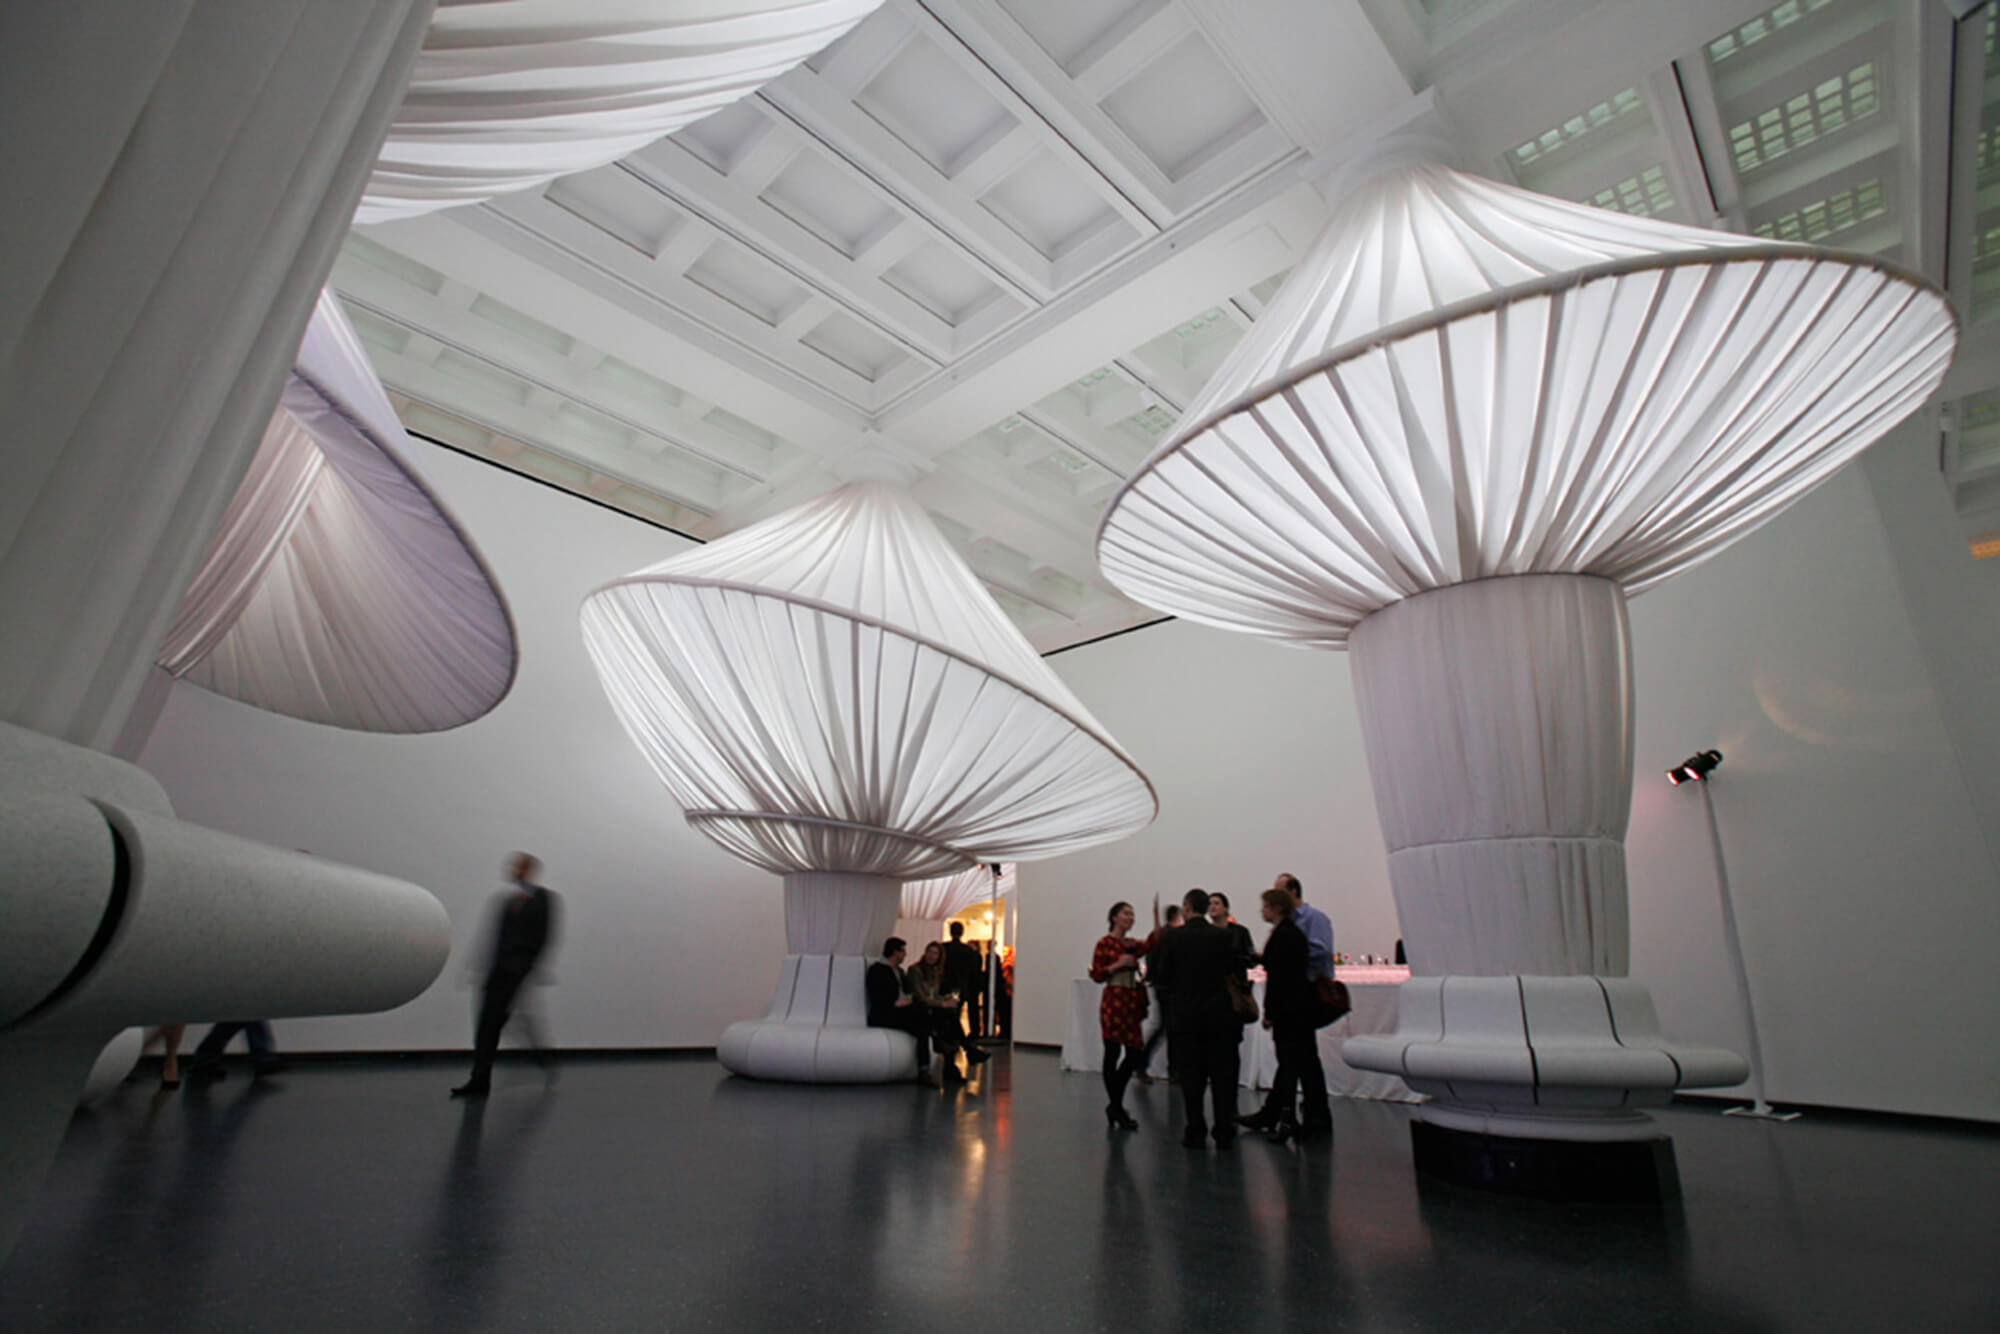 Colunas revestidas em tecido branco Sunbrella trazem sensação de mais espaço à grande entrada do Brooklyn Museum